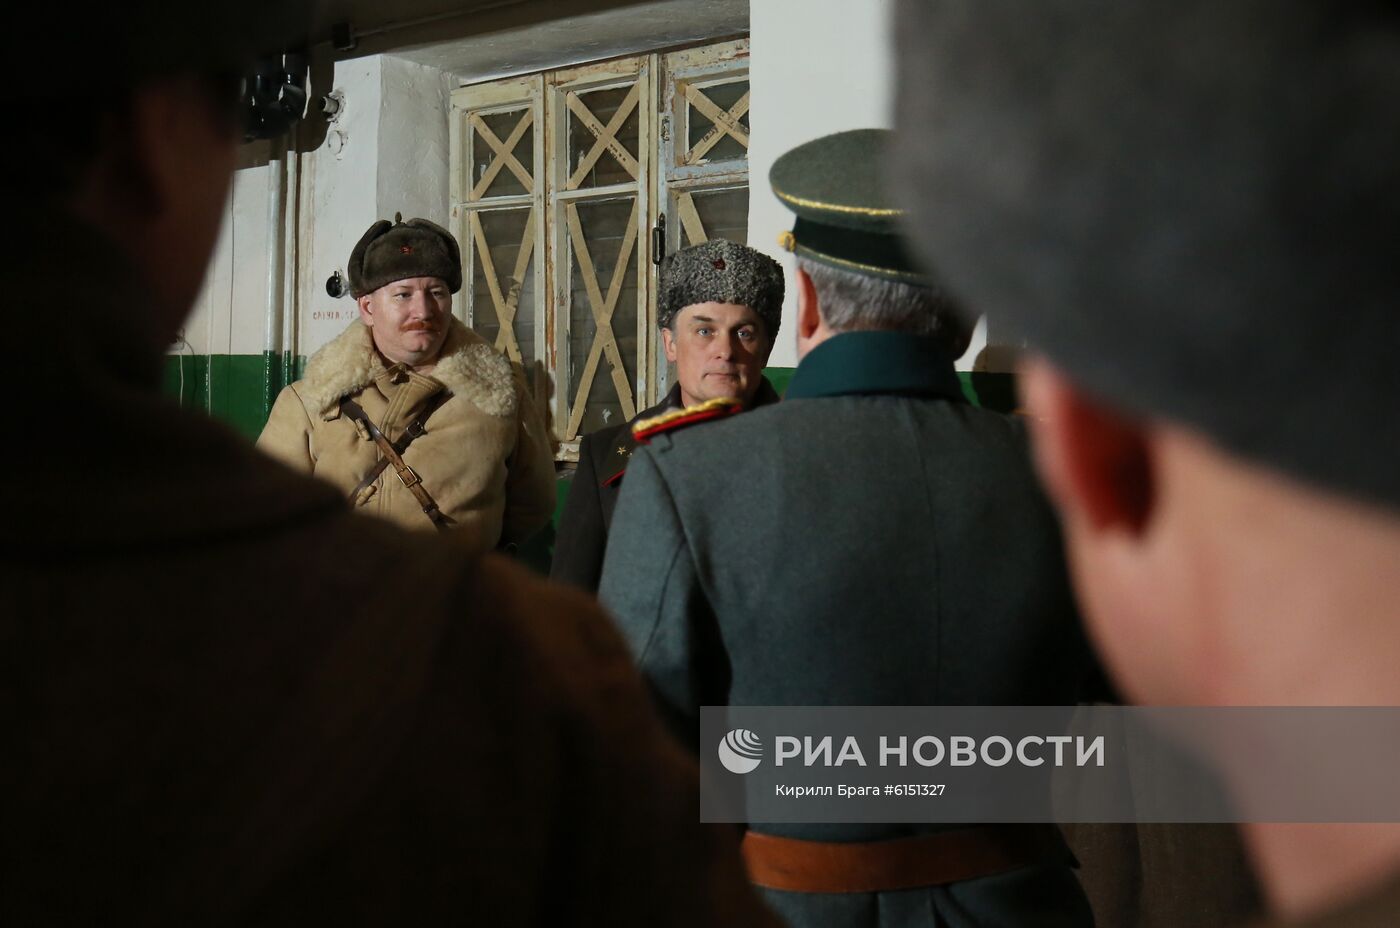 Реконструкция "Пленение штаба Ф. Паулюса" в Волгограде